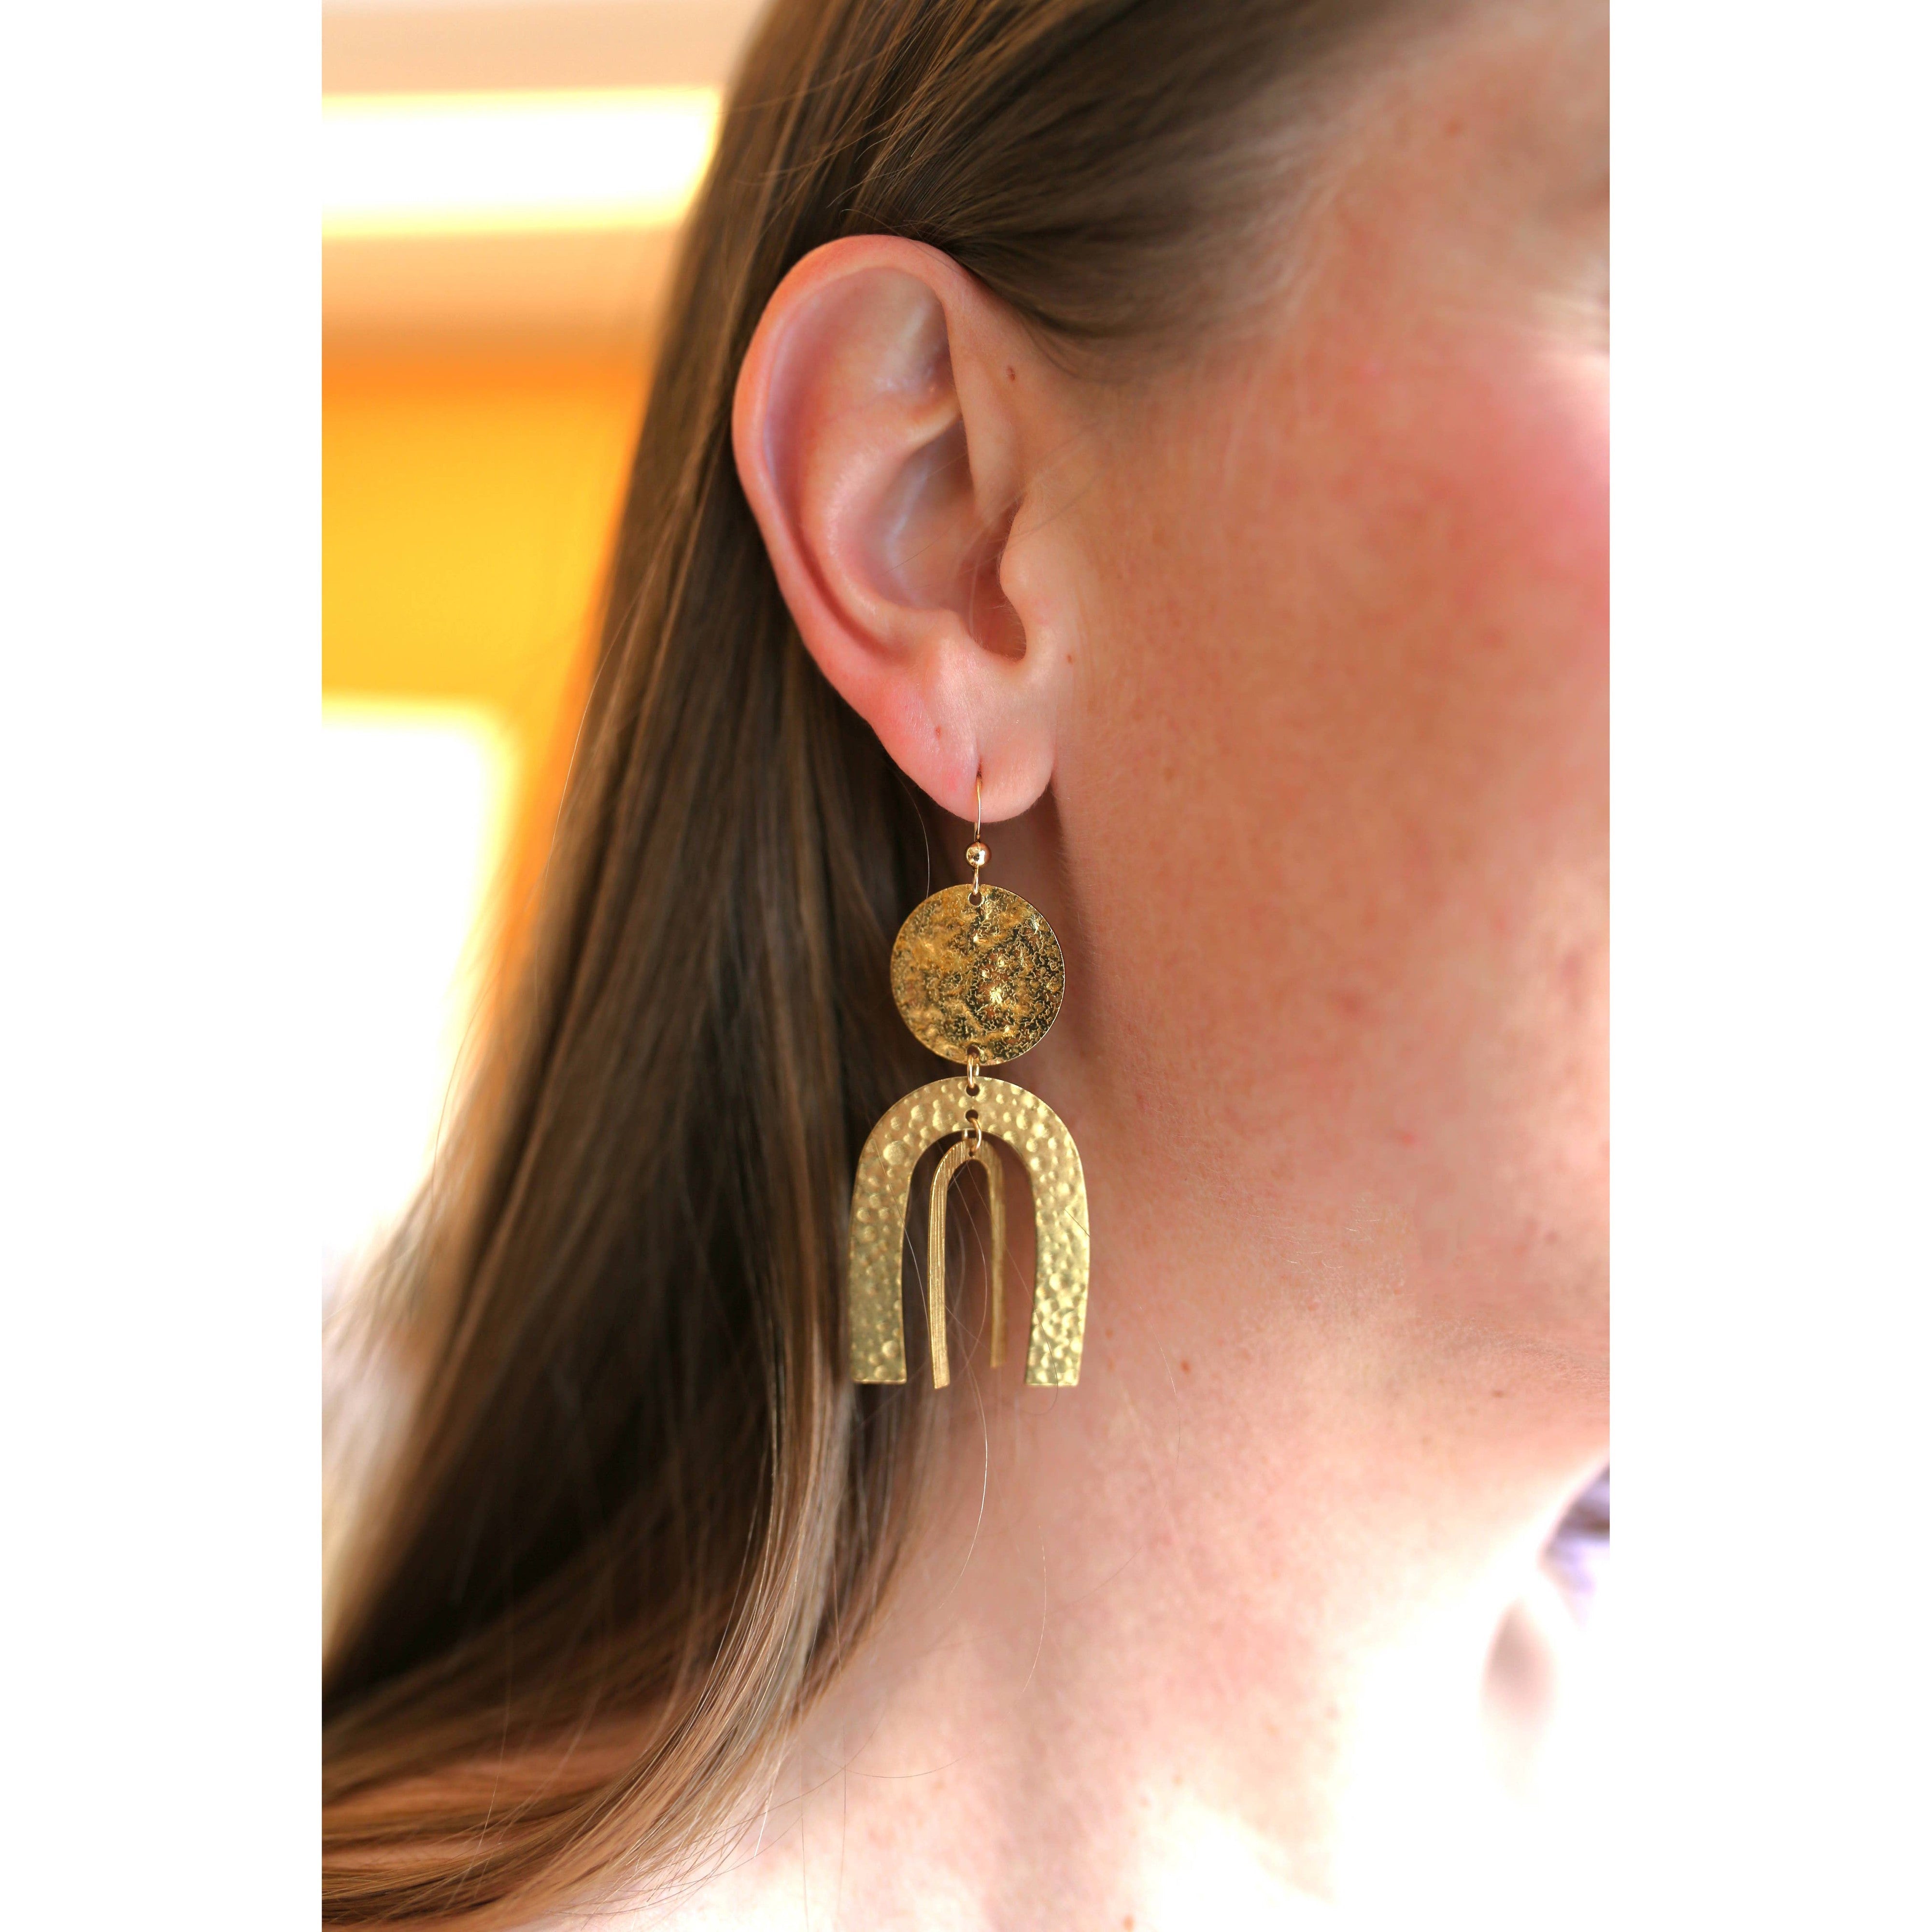 Shiloh Earrings